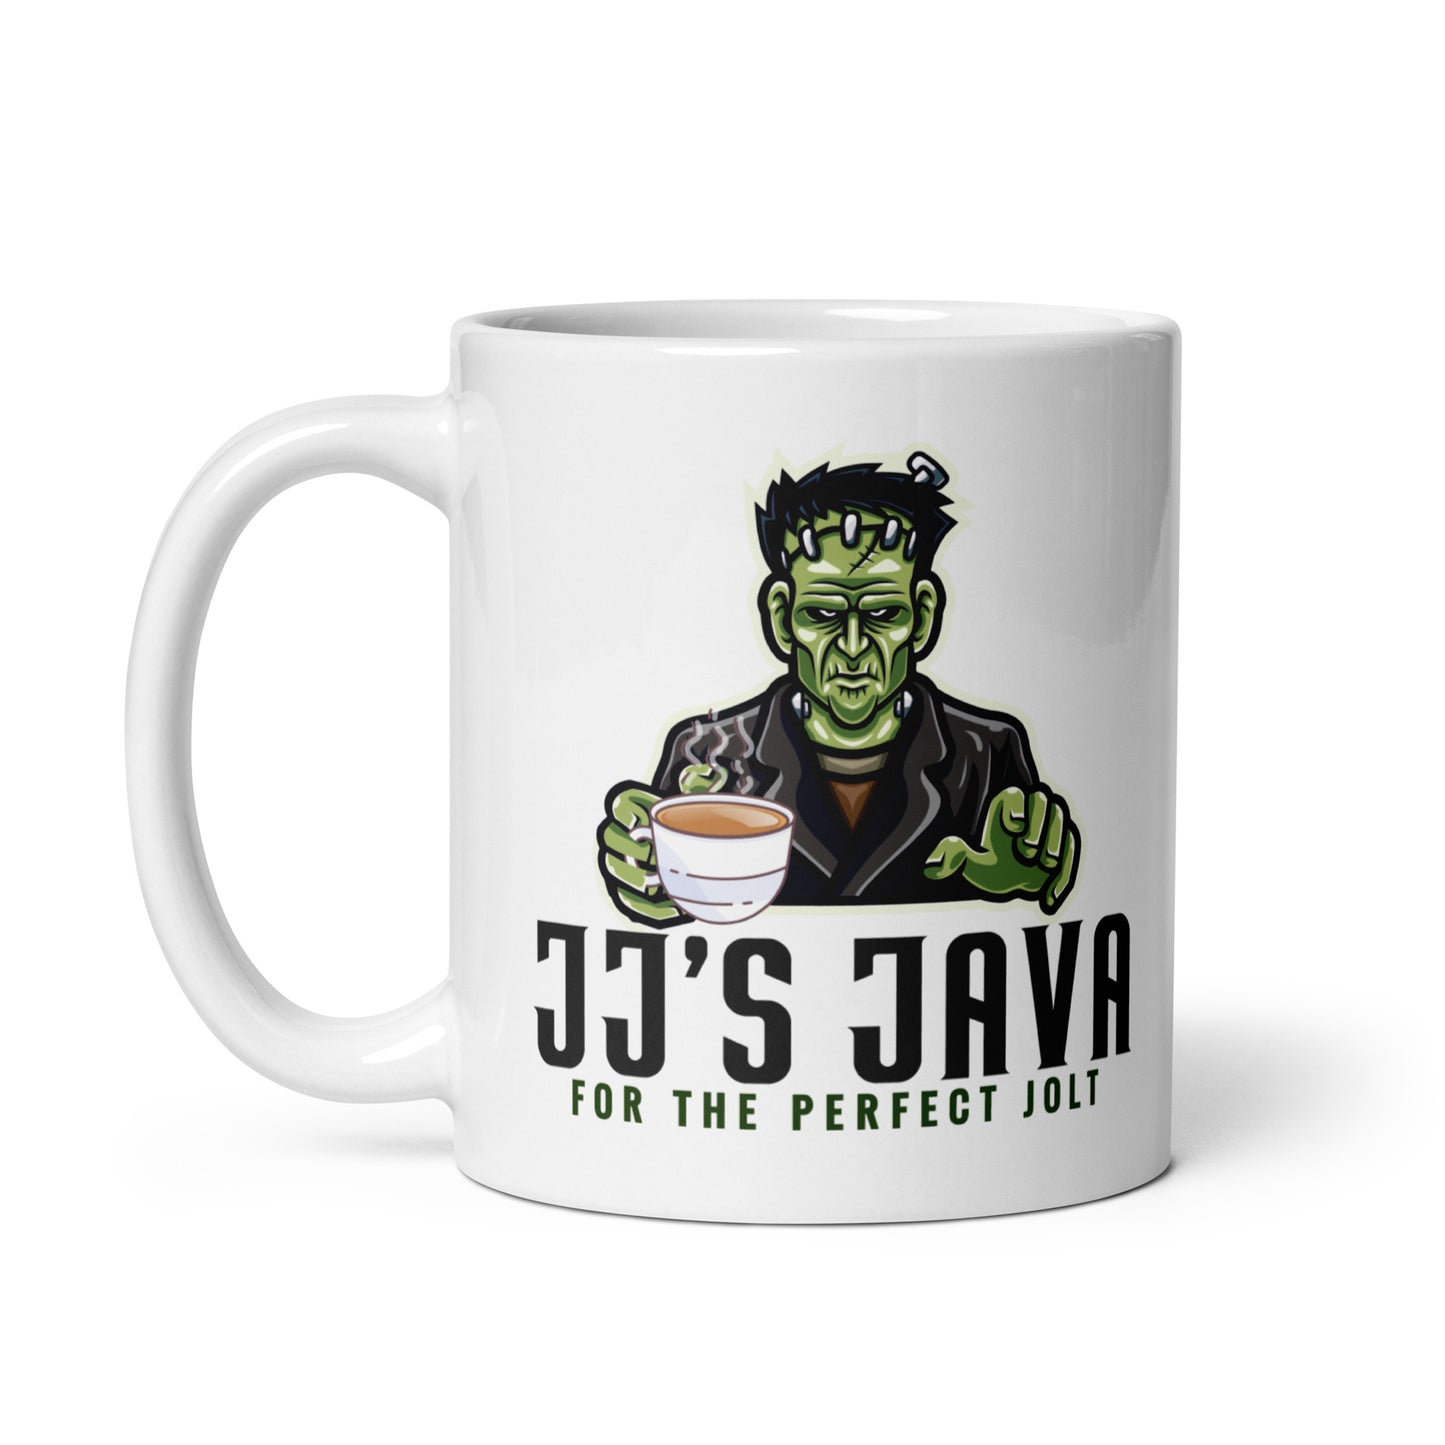 The Perfect Jolt mug